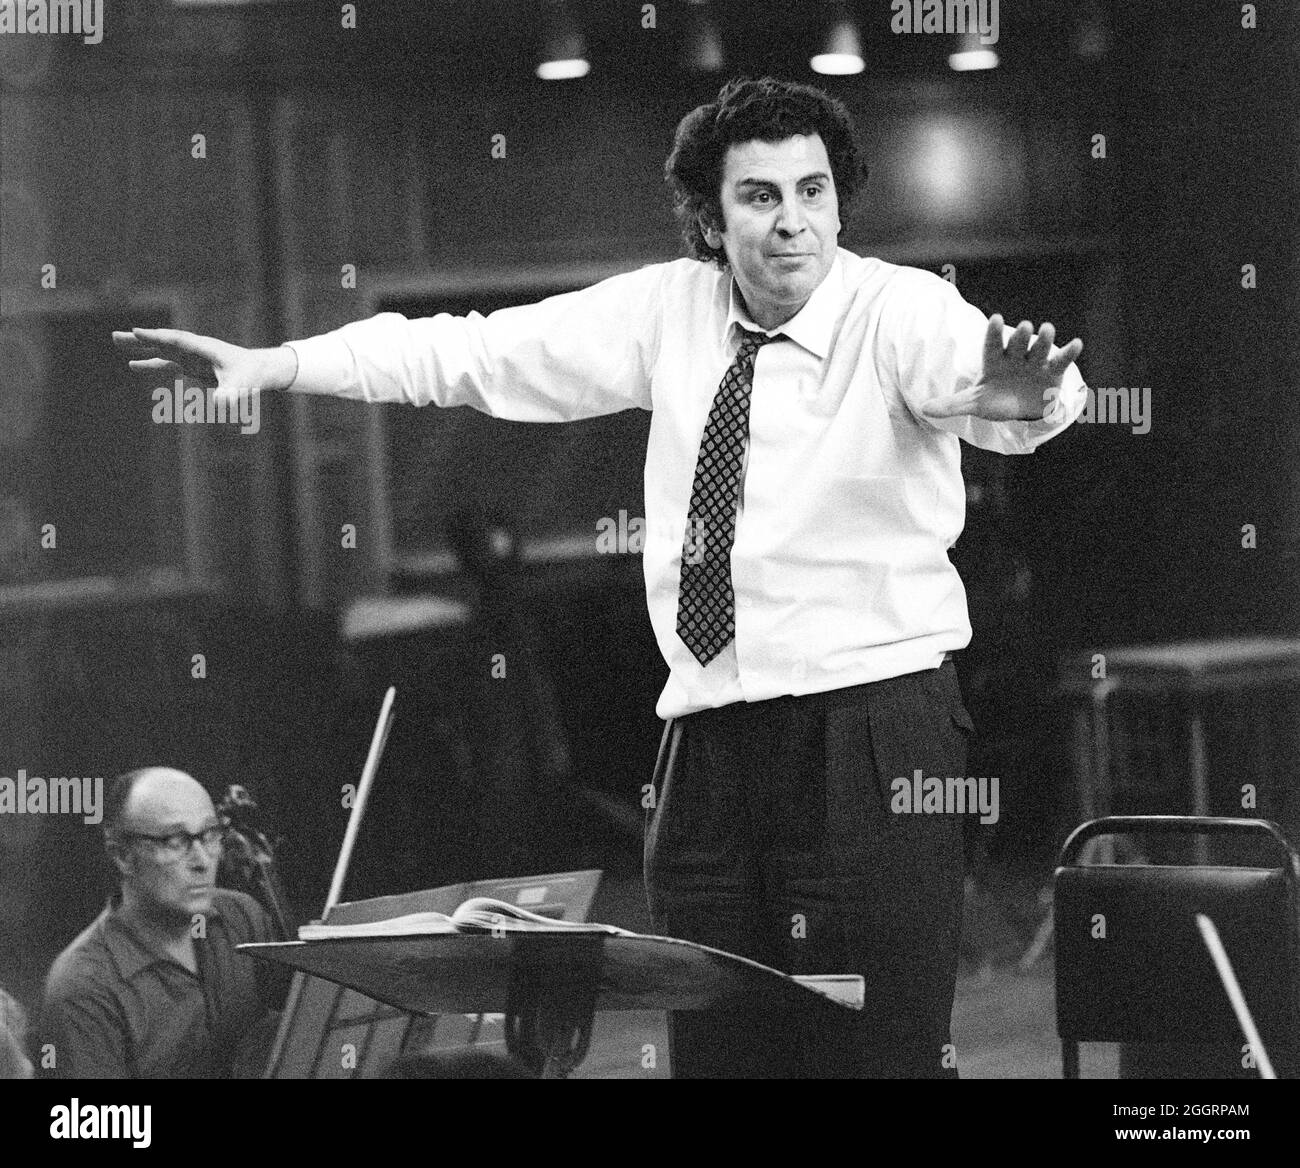 Mikis Theodorakis dirigeant son oratorio « la voûte de l'Esprit » pendant les répétitions. Royal Albert Hall, Londres, 26 avril 1970. Banque D'Images